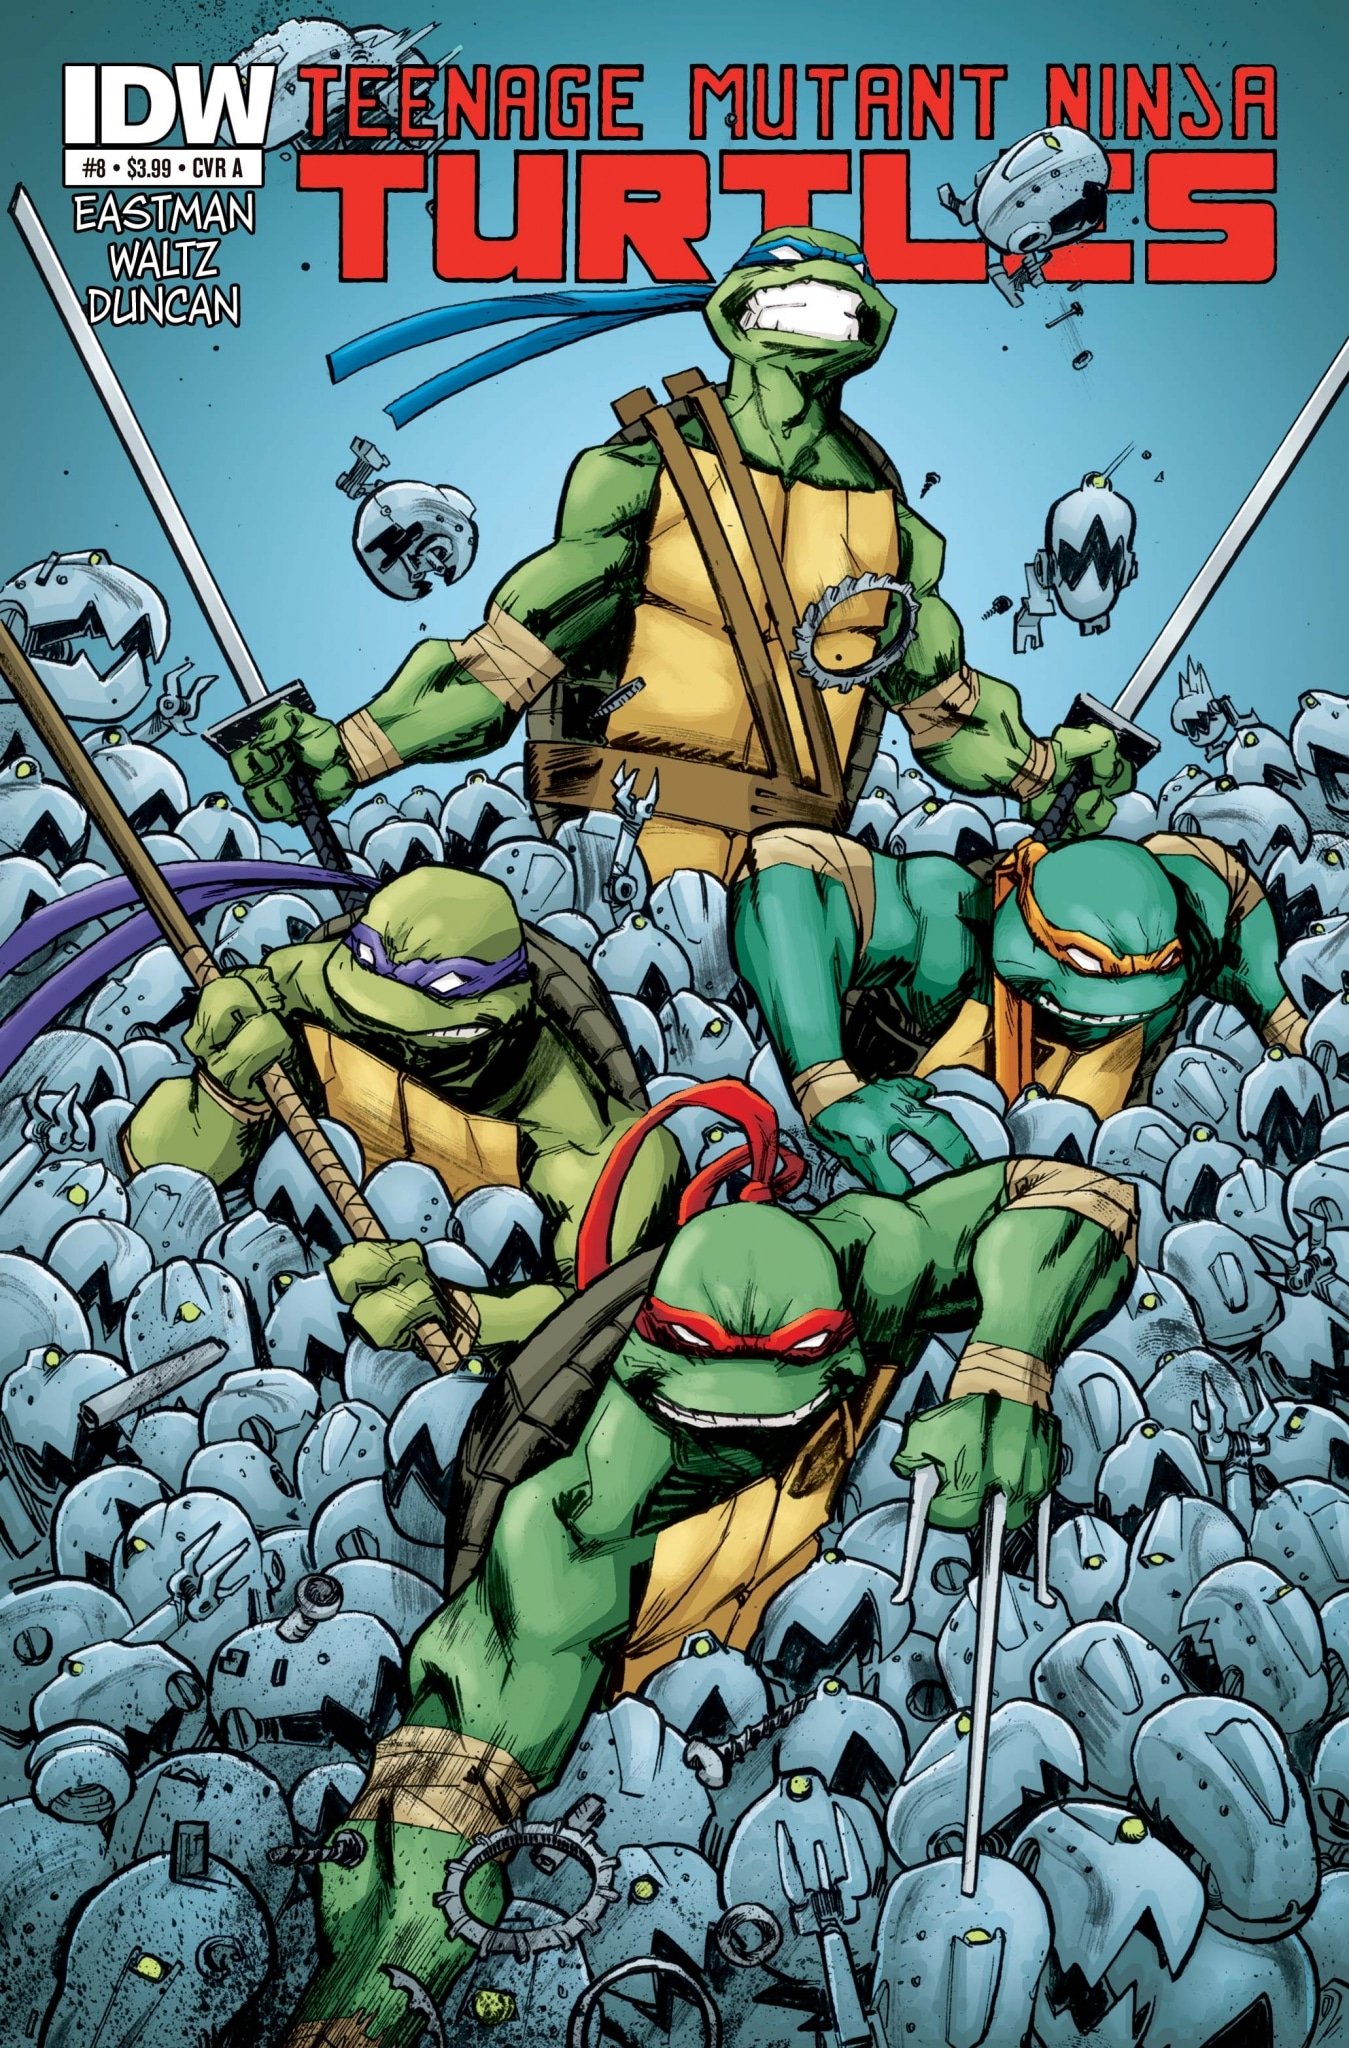 Are IDW's Teenage Mutant Ninja Turtles Comics Good?